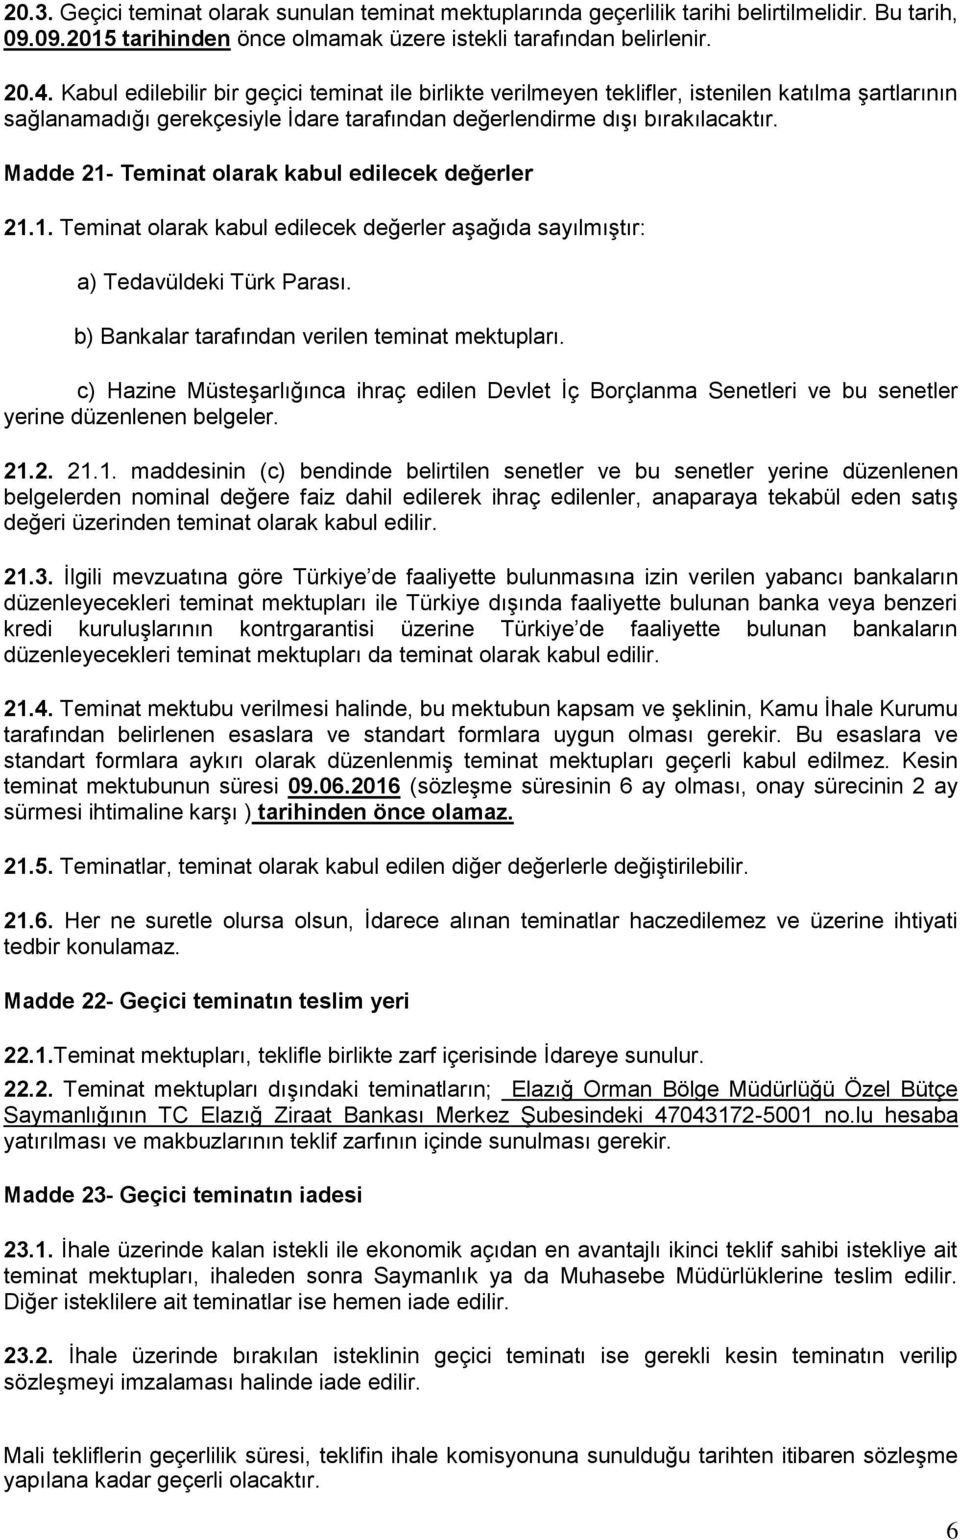 Madde 21- Teminat olarak kabul edilecek değerler 21.1. Teminat olarak kabul edilecek değerler aşağıda sayılmıştır: a) Tedavüldeki Türk Parası. b) Bankalar tarafından verilen teminat mektupları.